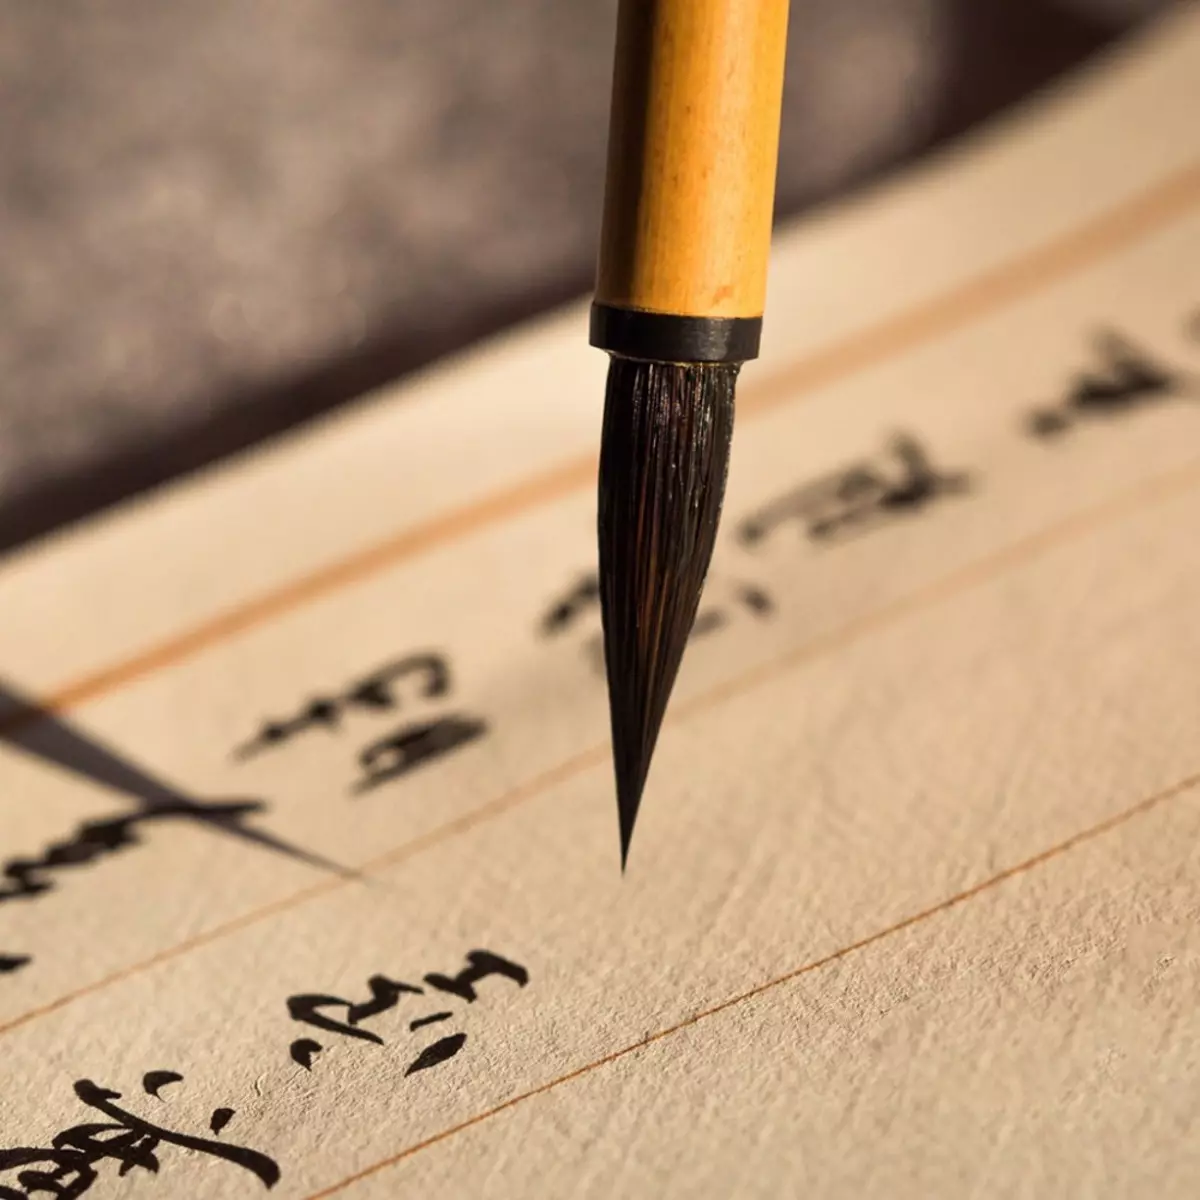 Calligraphy: Kodi ndiyenera kudziwa ma hierogyphs kuti muchite ku China stalligraphy? Masitayilo kwa oyamba 19183_19